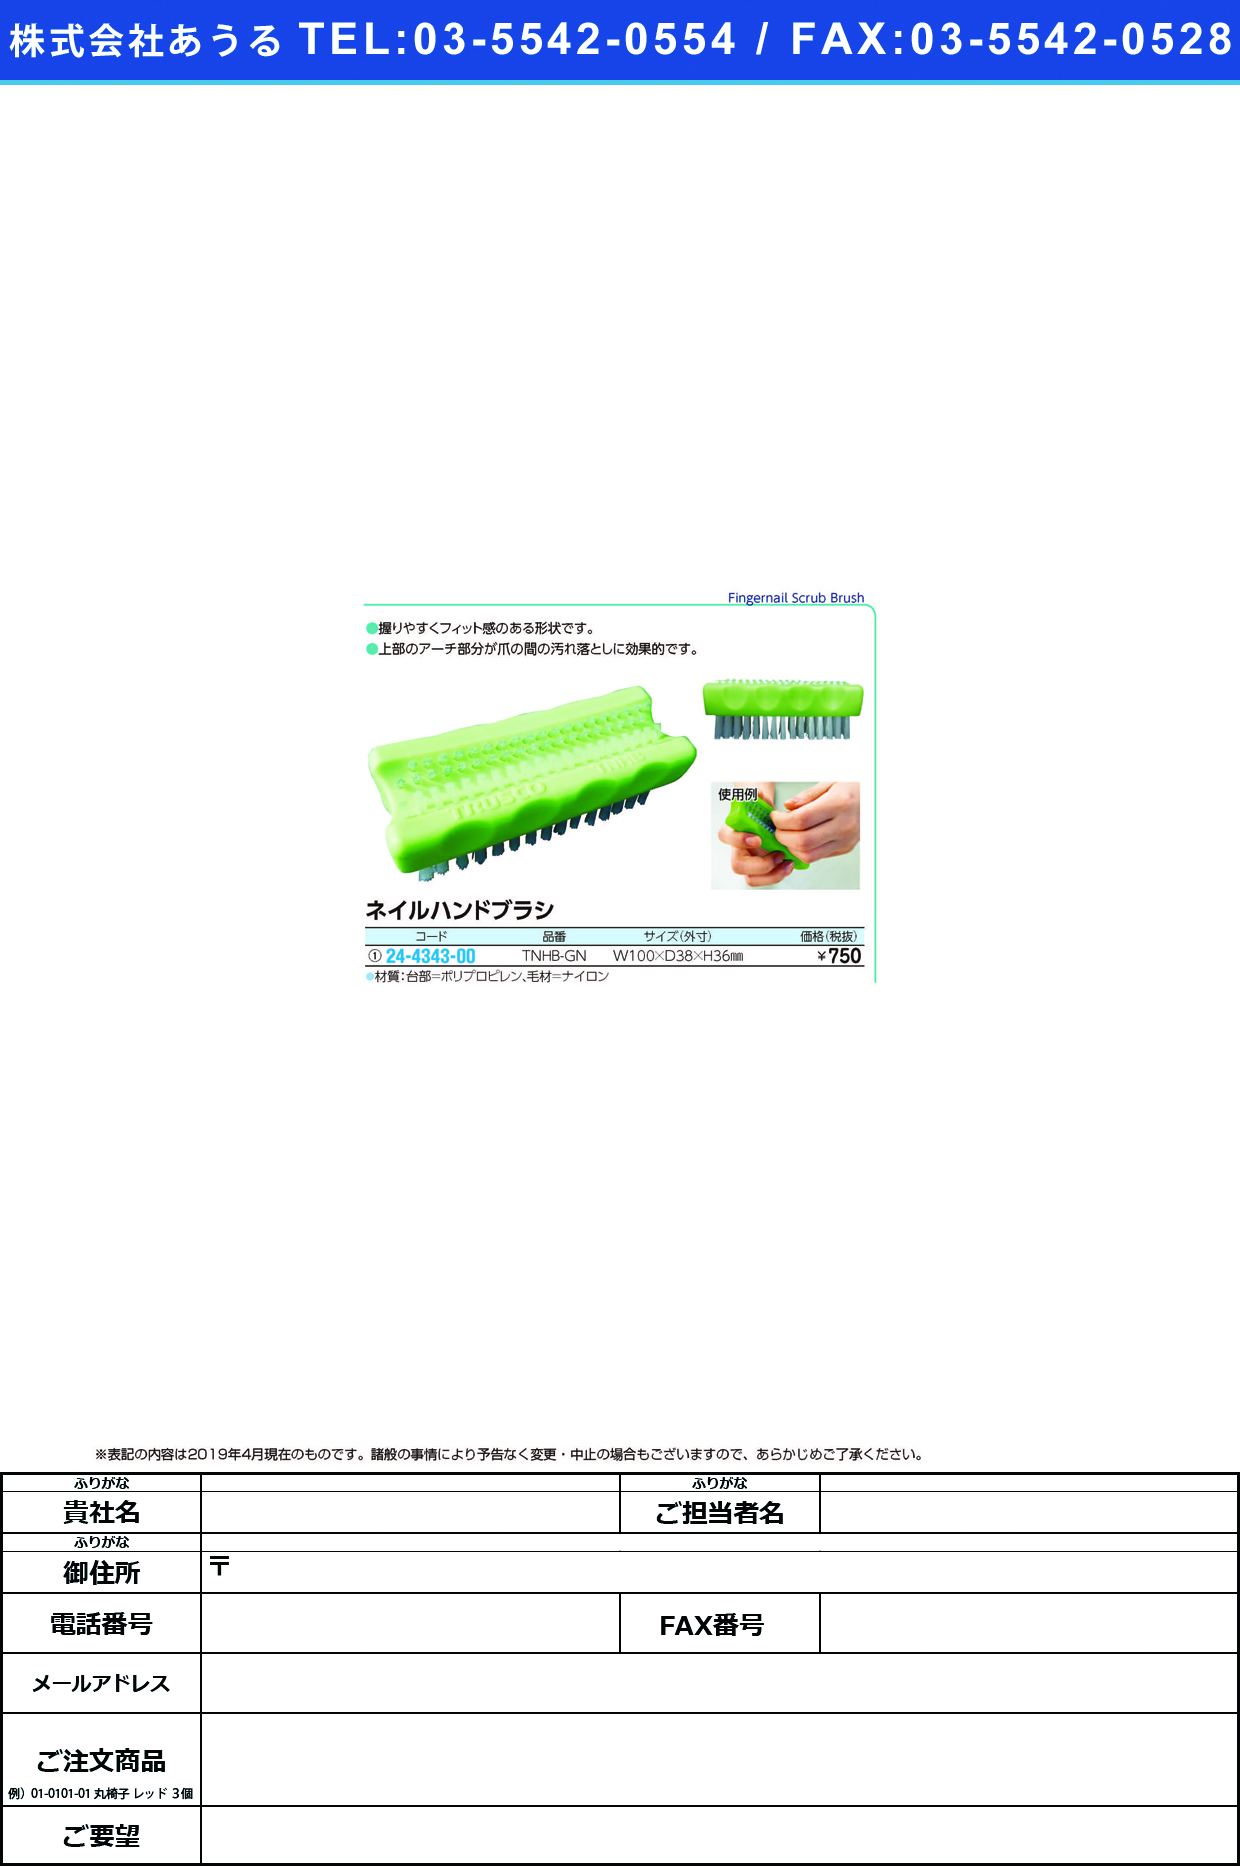 (24-4343-00)ネイルハンドブラシ TNHB-GN(ｸﾞﾘｰﾝ) ﾈｲﾙﾊﾝﾄﾞﾌﾞﾗｼ【1個単位】【2019年カタログ商品】